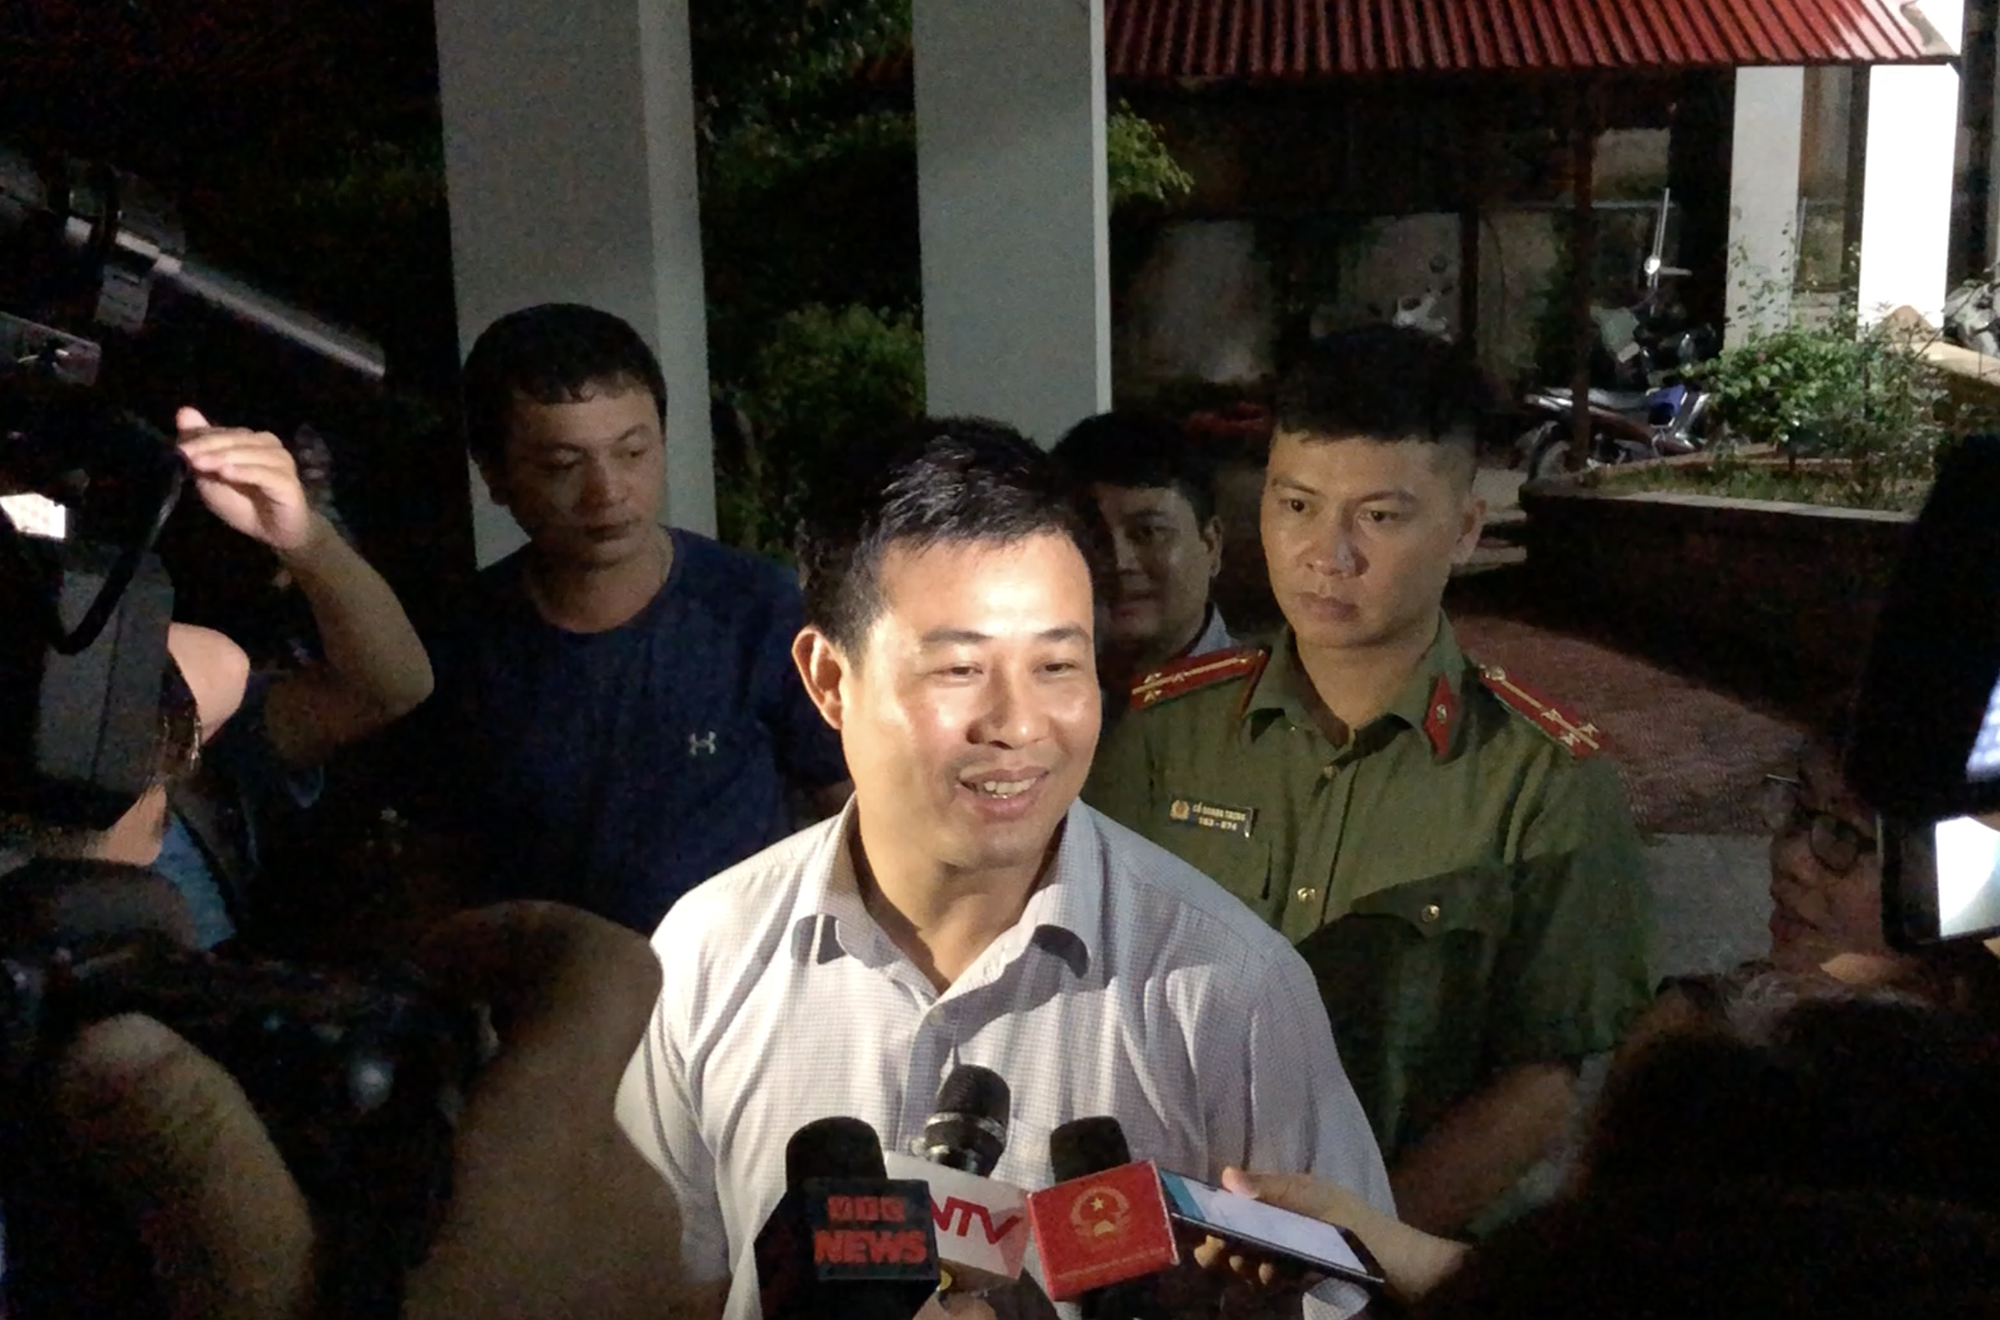 Phó Cục trưởng Cục Quản lý Chất lượng: “Có những thông tin đang rà soát về nghi vấn điểm thi ở Lạng Sơn và hiện chưa thể tiết lộ” - Ảnh 1.